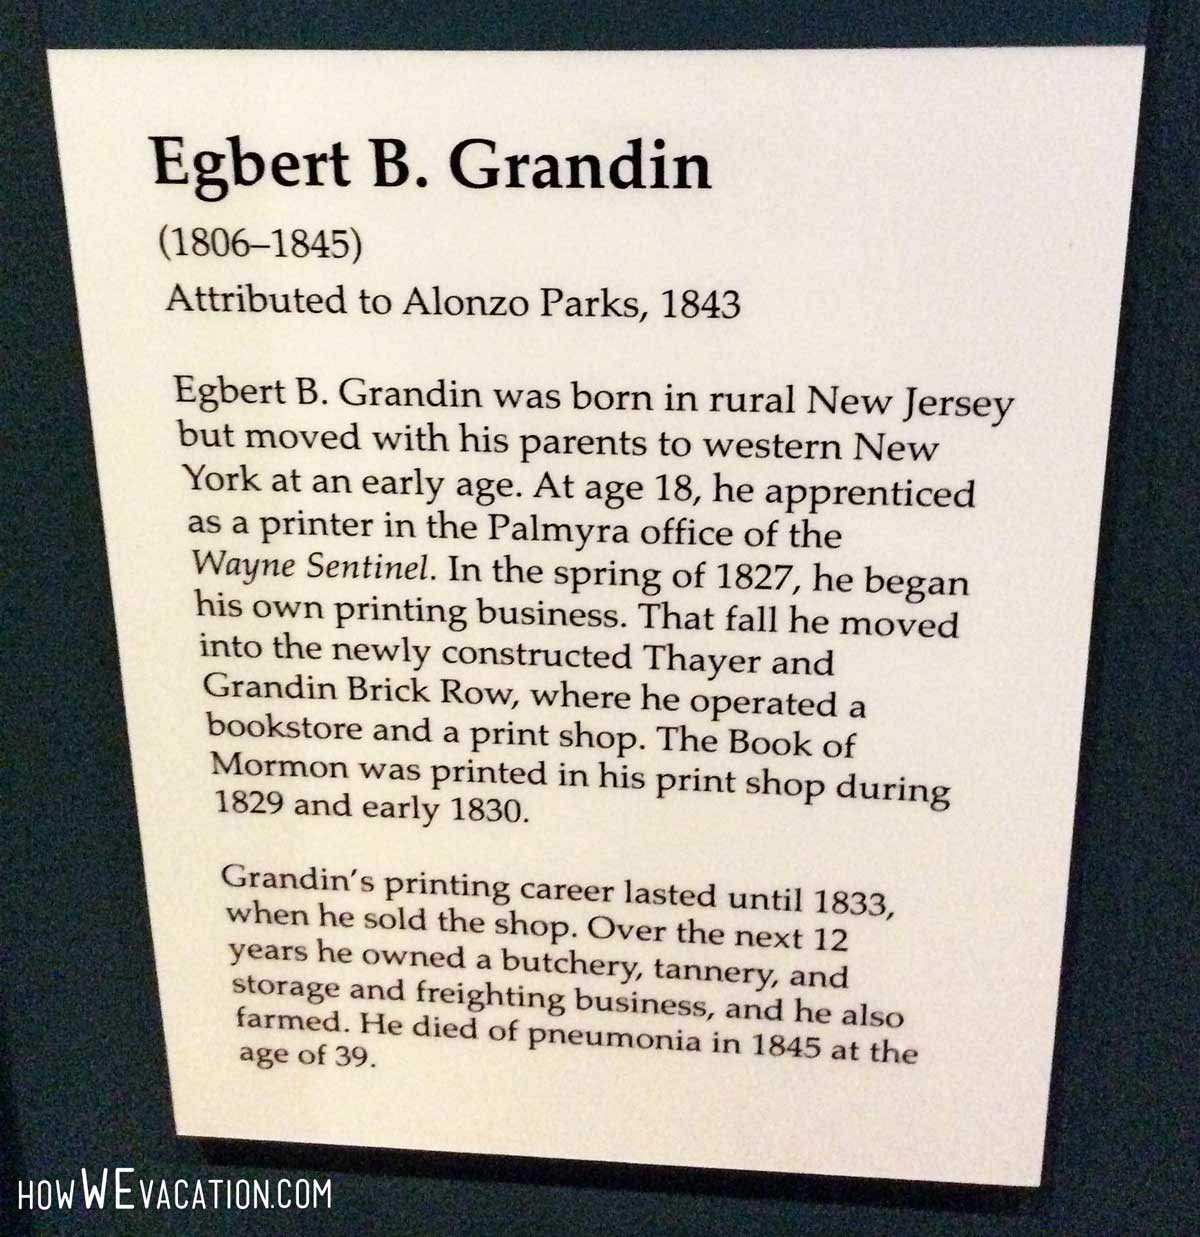 Egbert Grandin